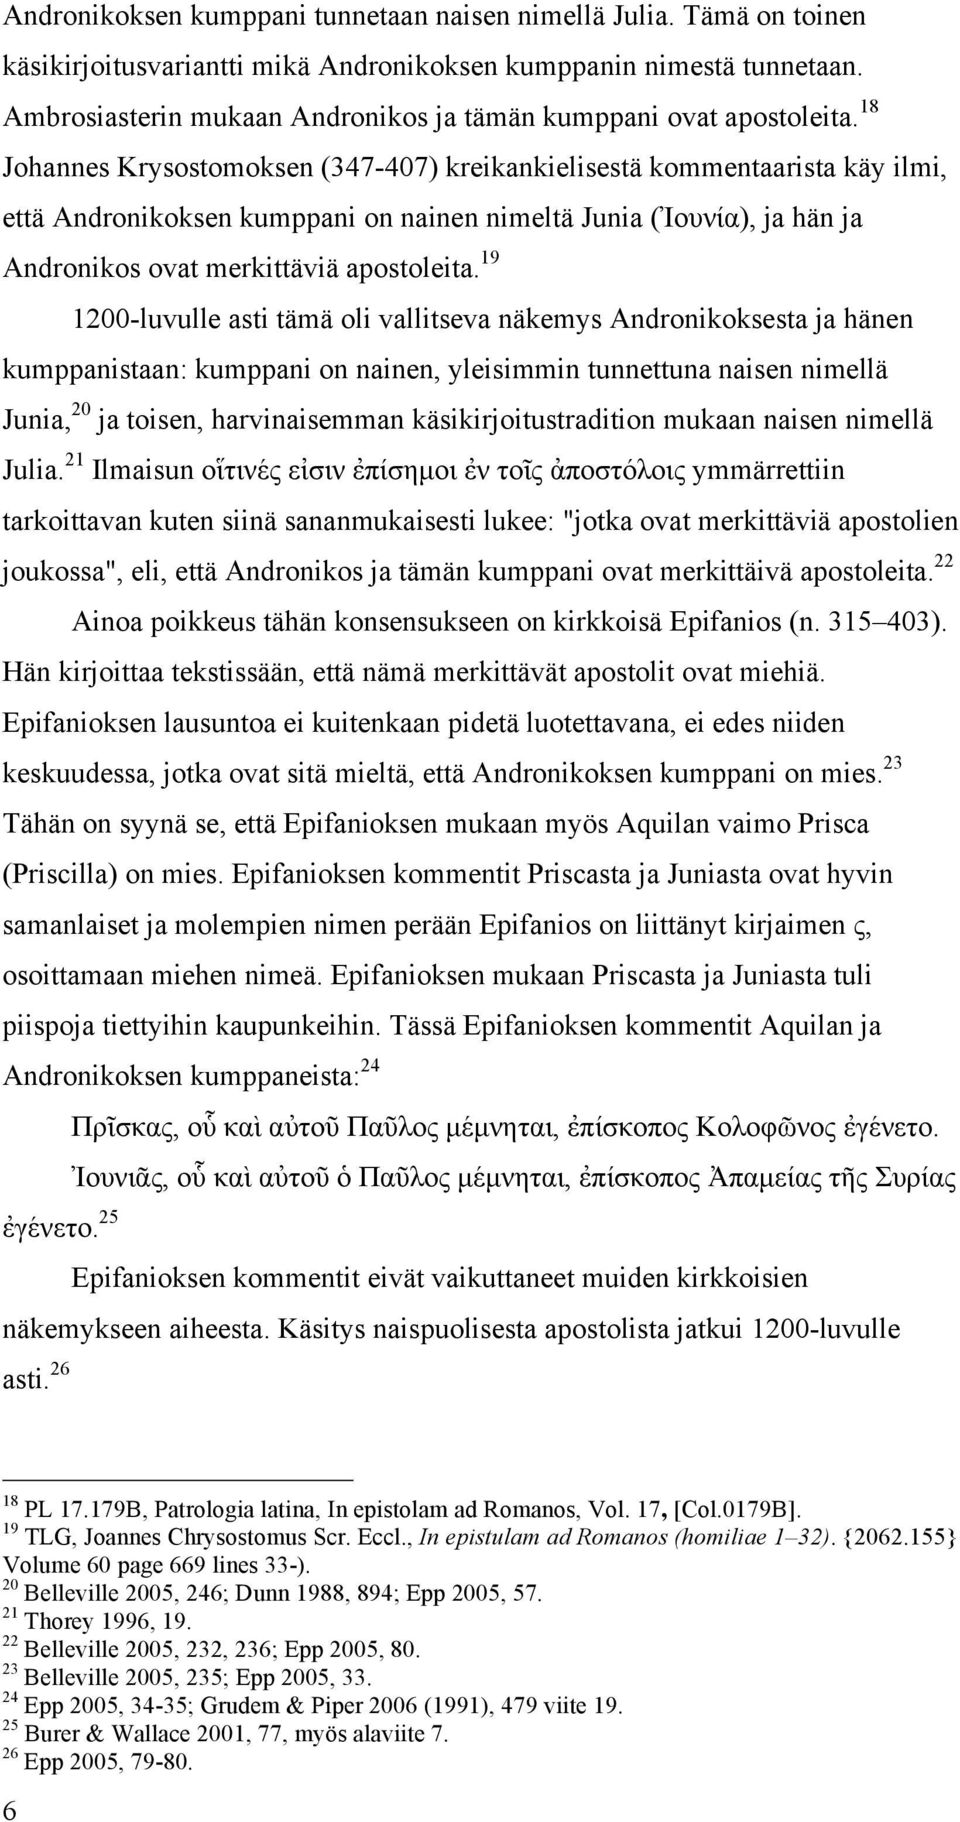 18 Johannes Krysostomoksen (347-407) kreikankielisestä kommentaarista käy ilmi, että Andronikoksen kumppani on nainen nimeltä Junia (Ἰουνία), ja hän ja Andronikos ovat merkittäviä apostoleita.